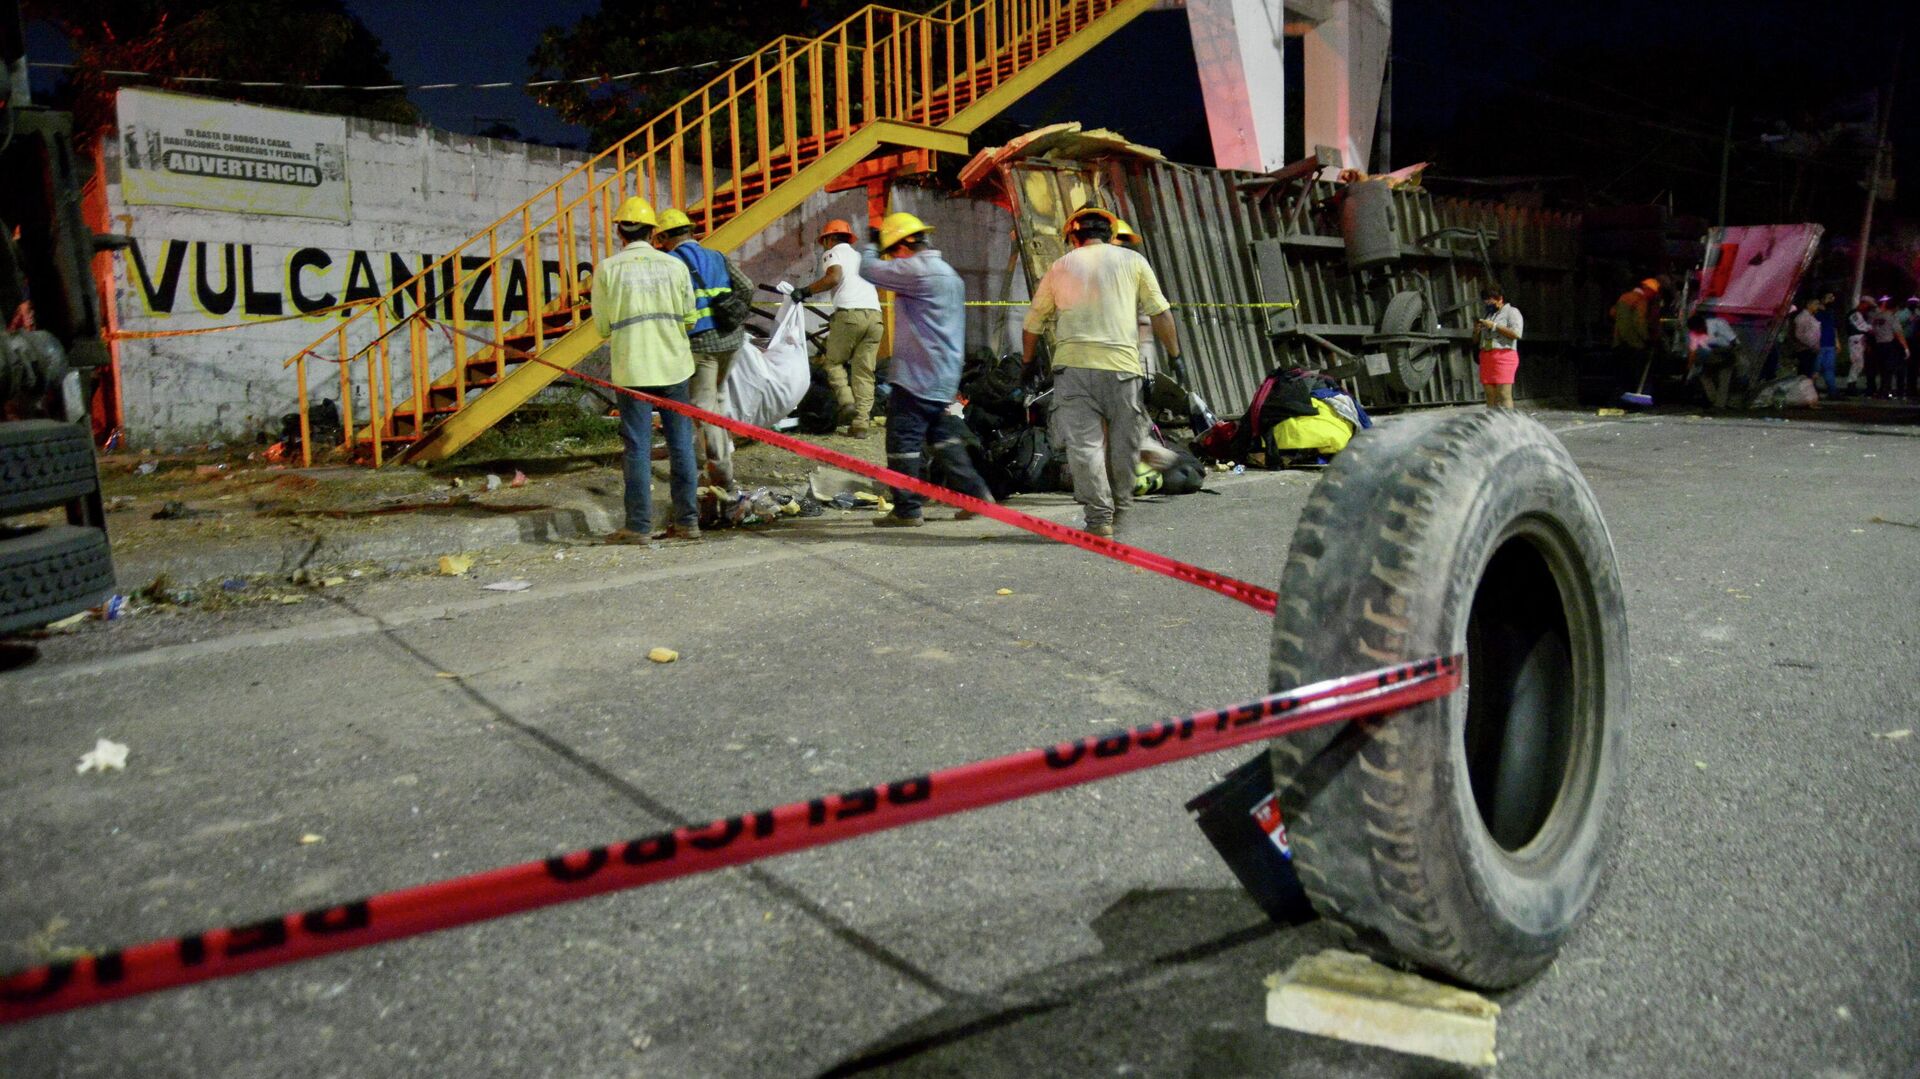 Miembros de Protección Civil trabajan en el lugar de un accidente de tráfico que dejó más de 50 personas muertas, en la ciudad de Tuxtla Gutiérrez, el estado de Chiapas, México, 9 de diciembre de 2021 - Sputnik Mundo, 1920, 17.12.2021